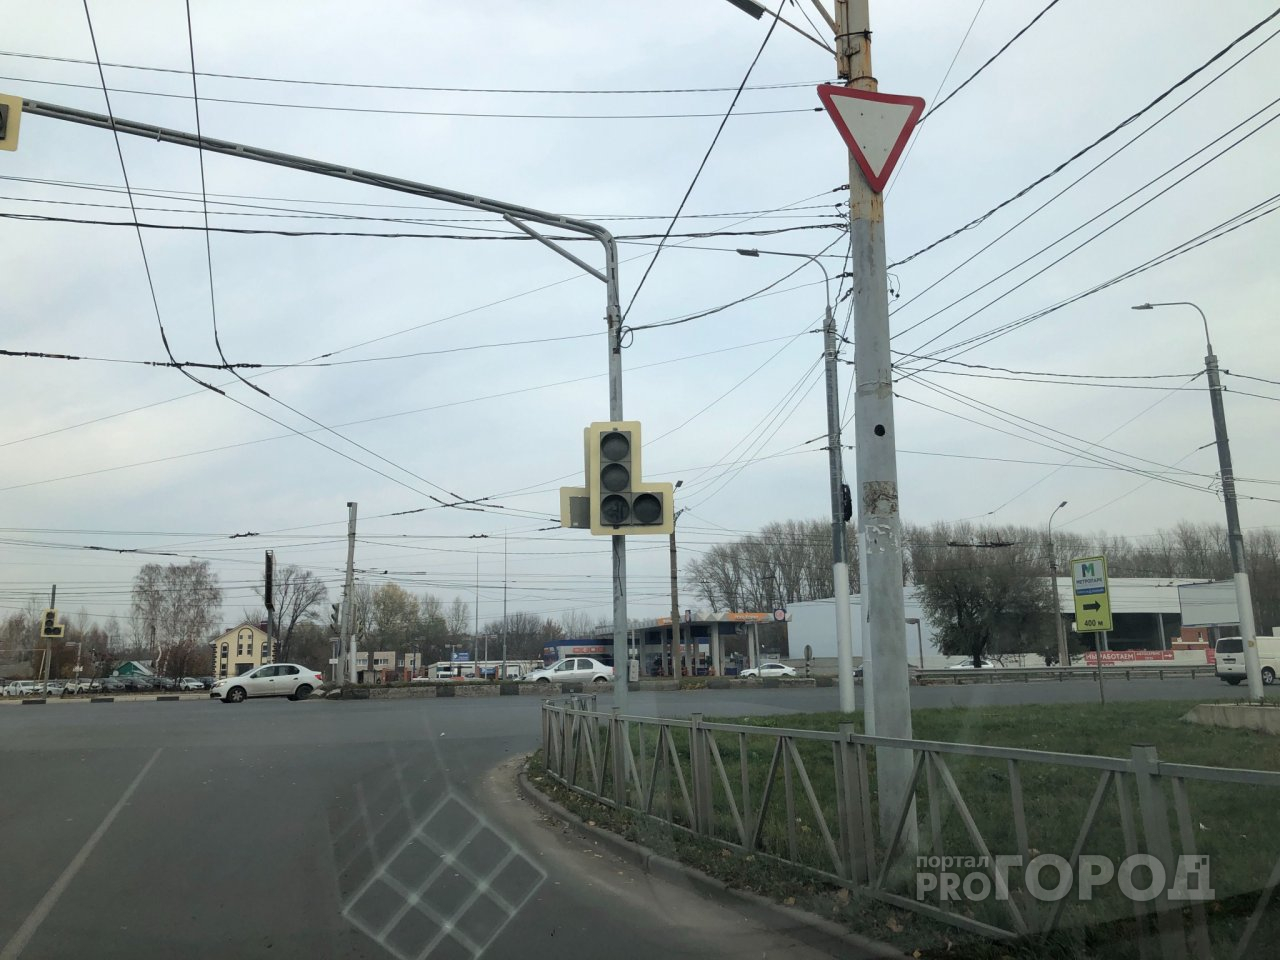 Внимание, водители: на повороте с Мервинской на Московское шоссе не работает светофор